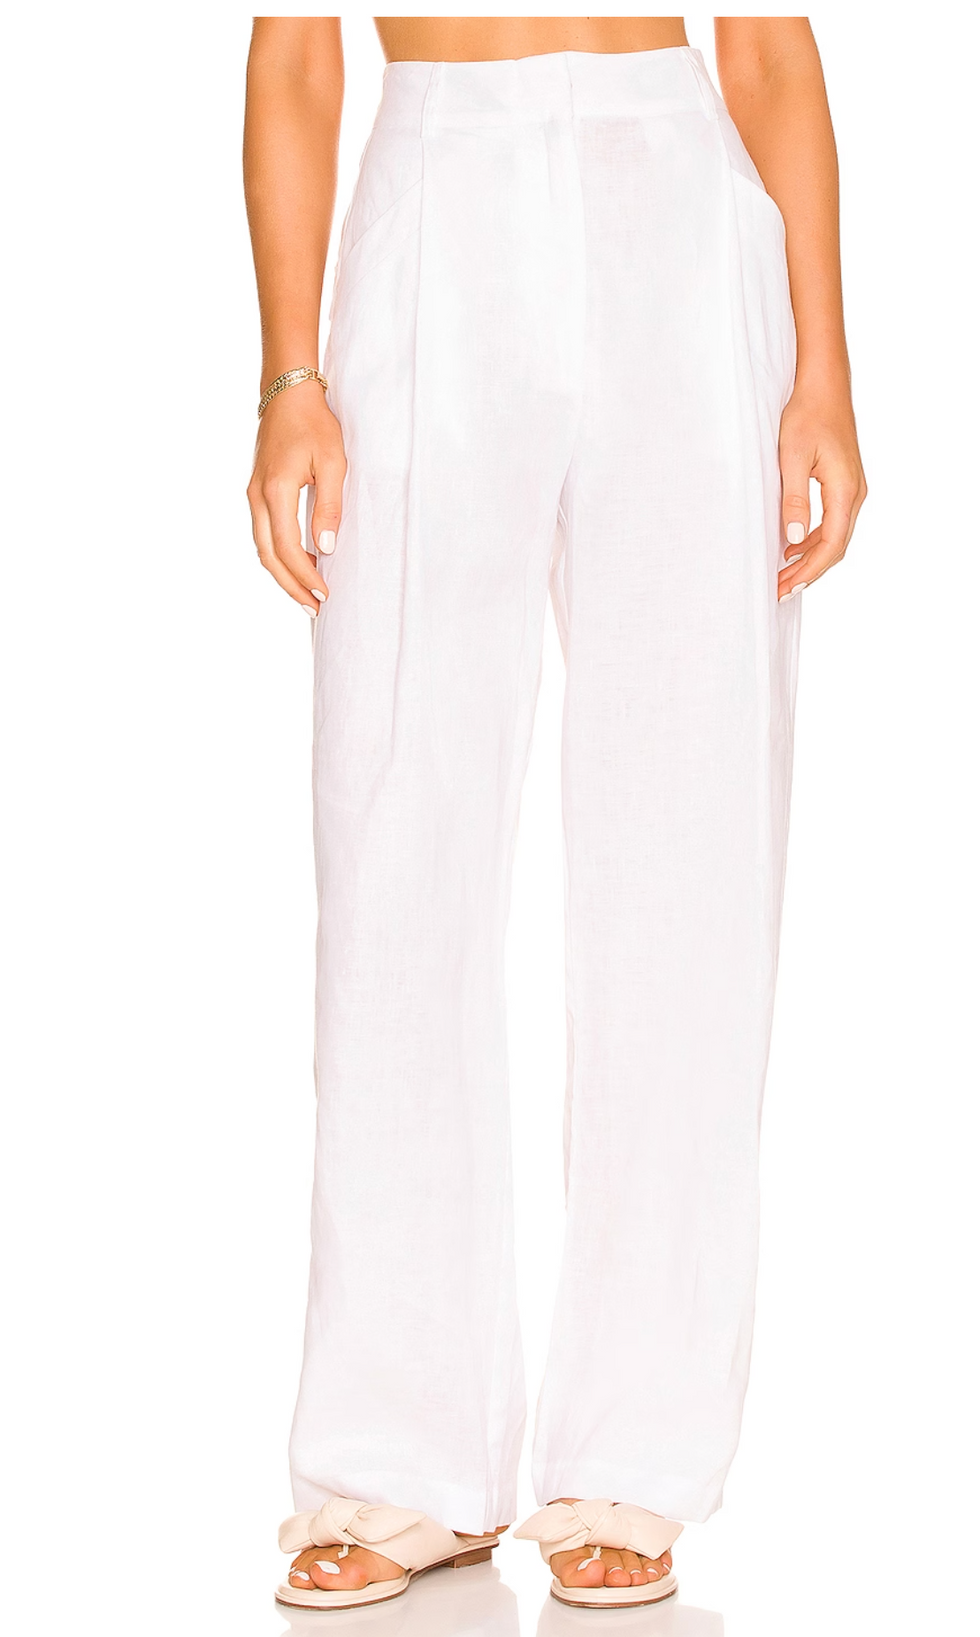 white linen straight-legged trousers